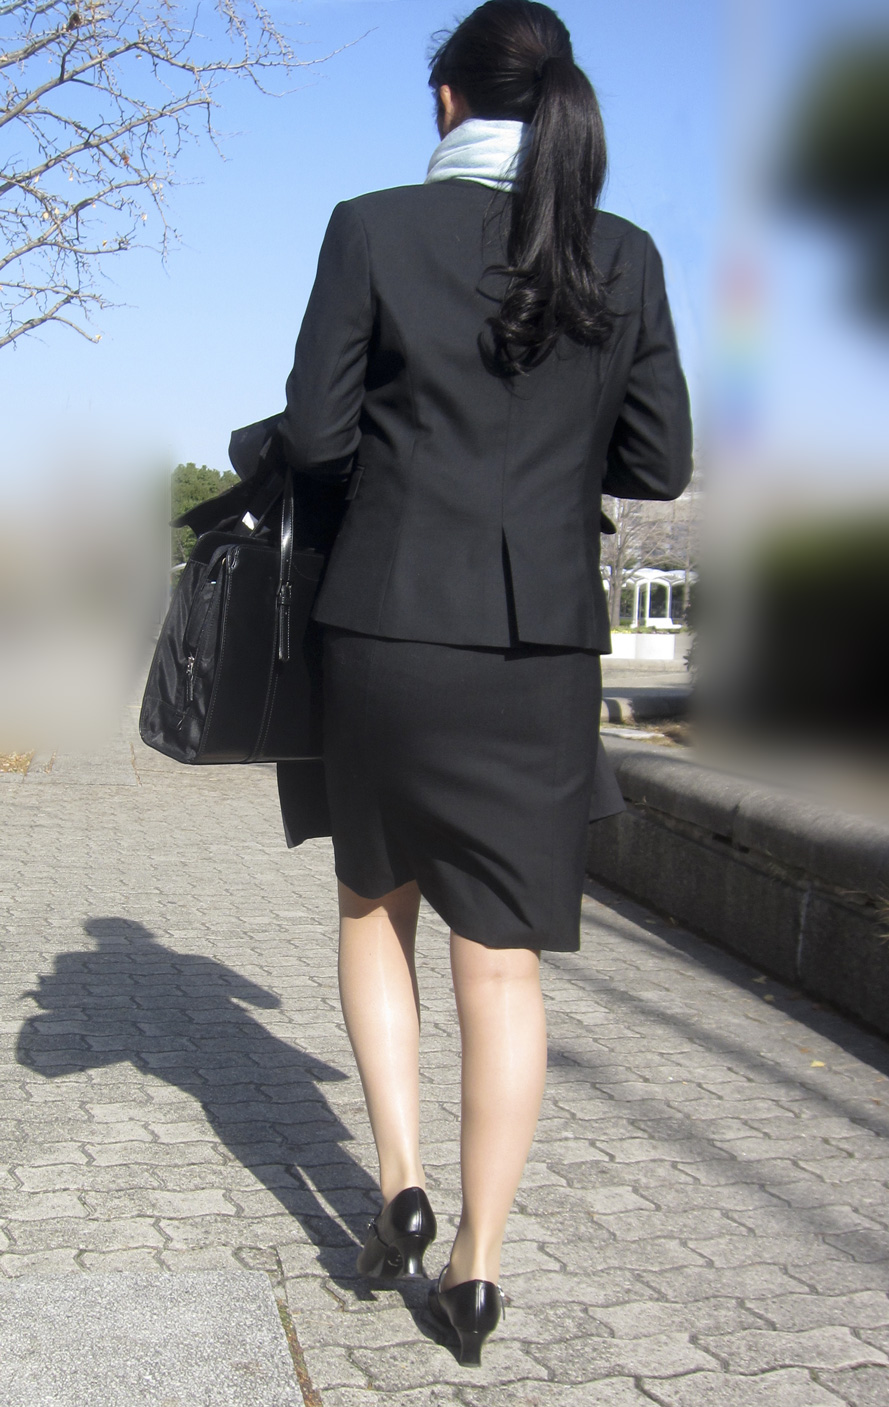 OLさんや就活女子のタイトスカートお尻を街撮りした素人エロ画像-078